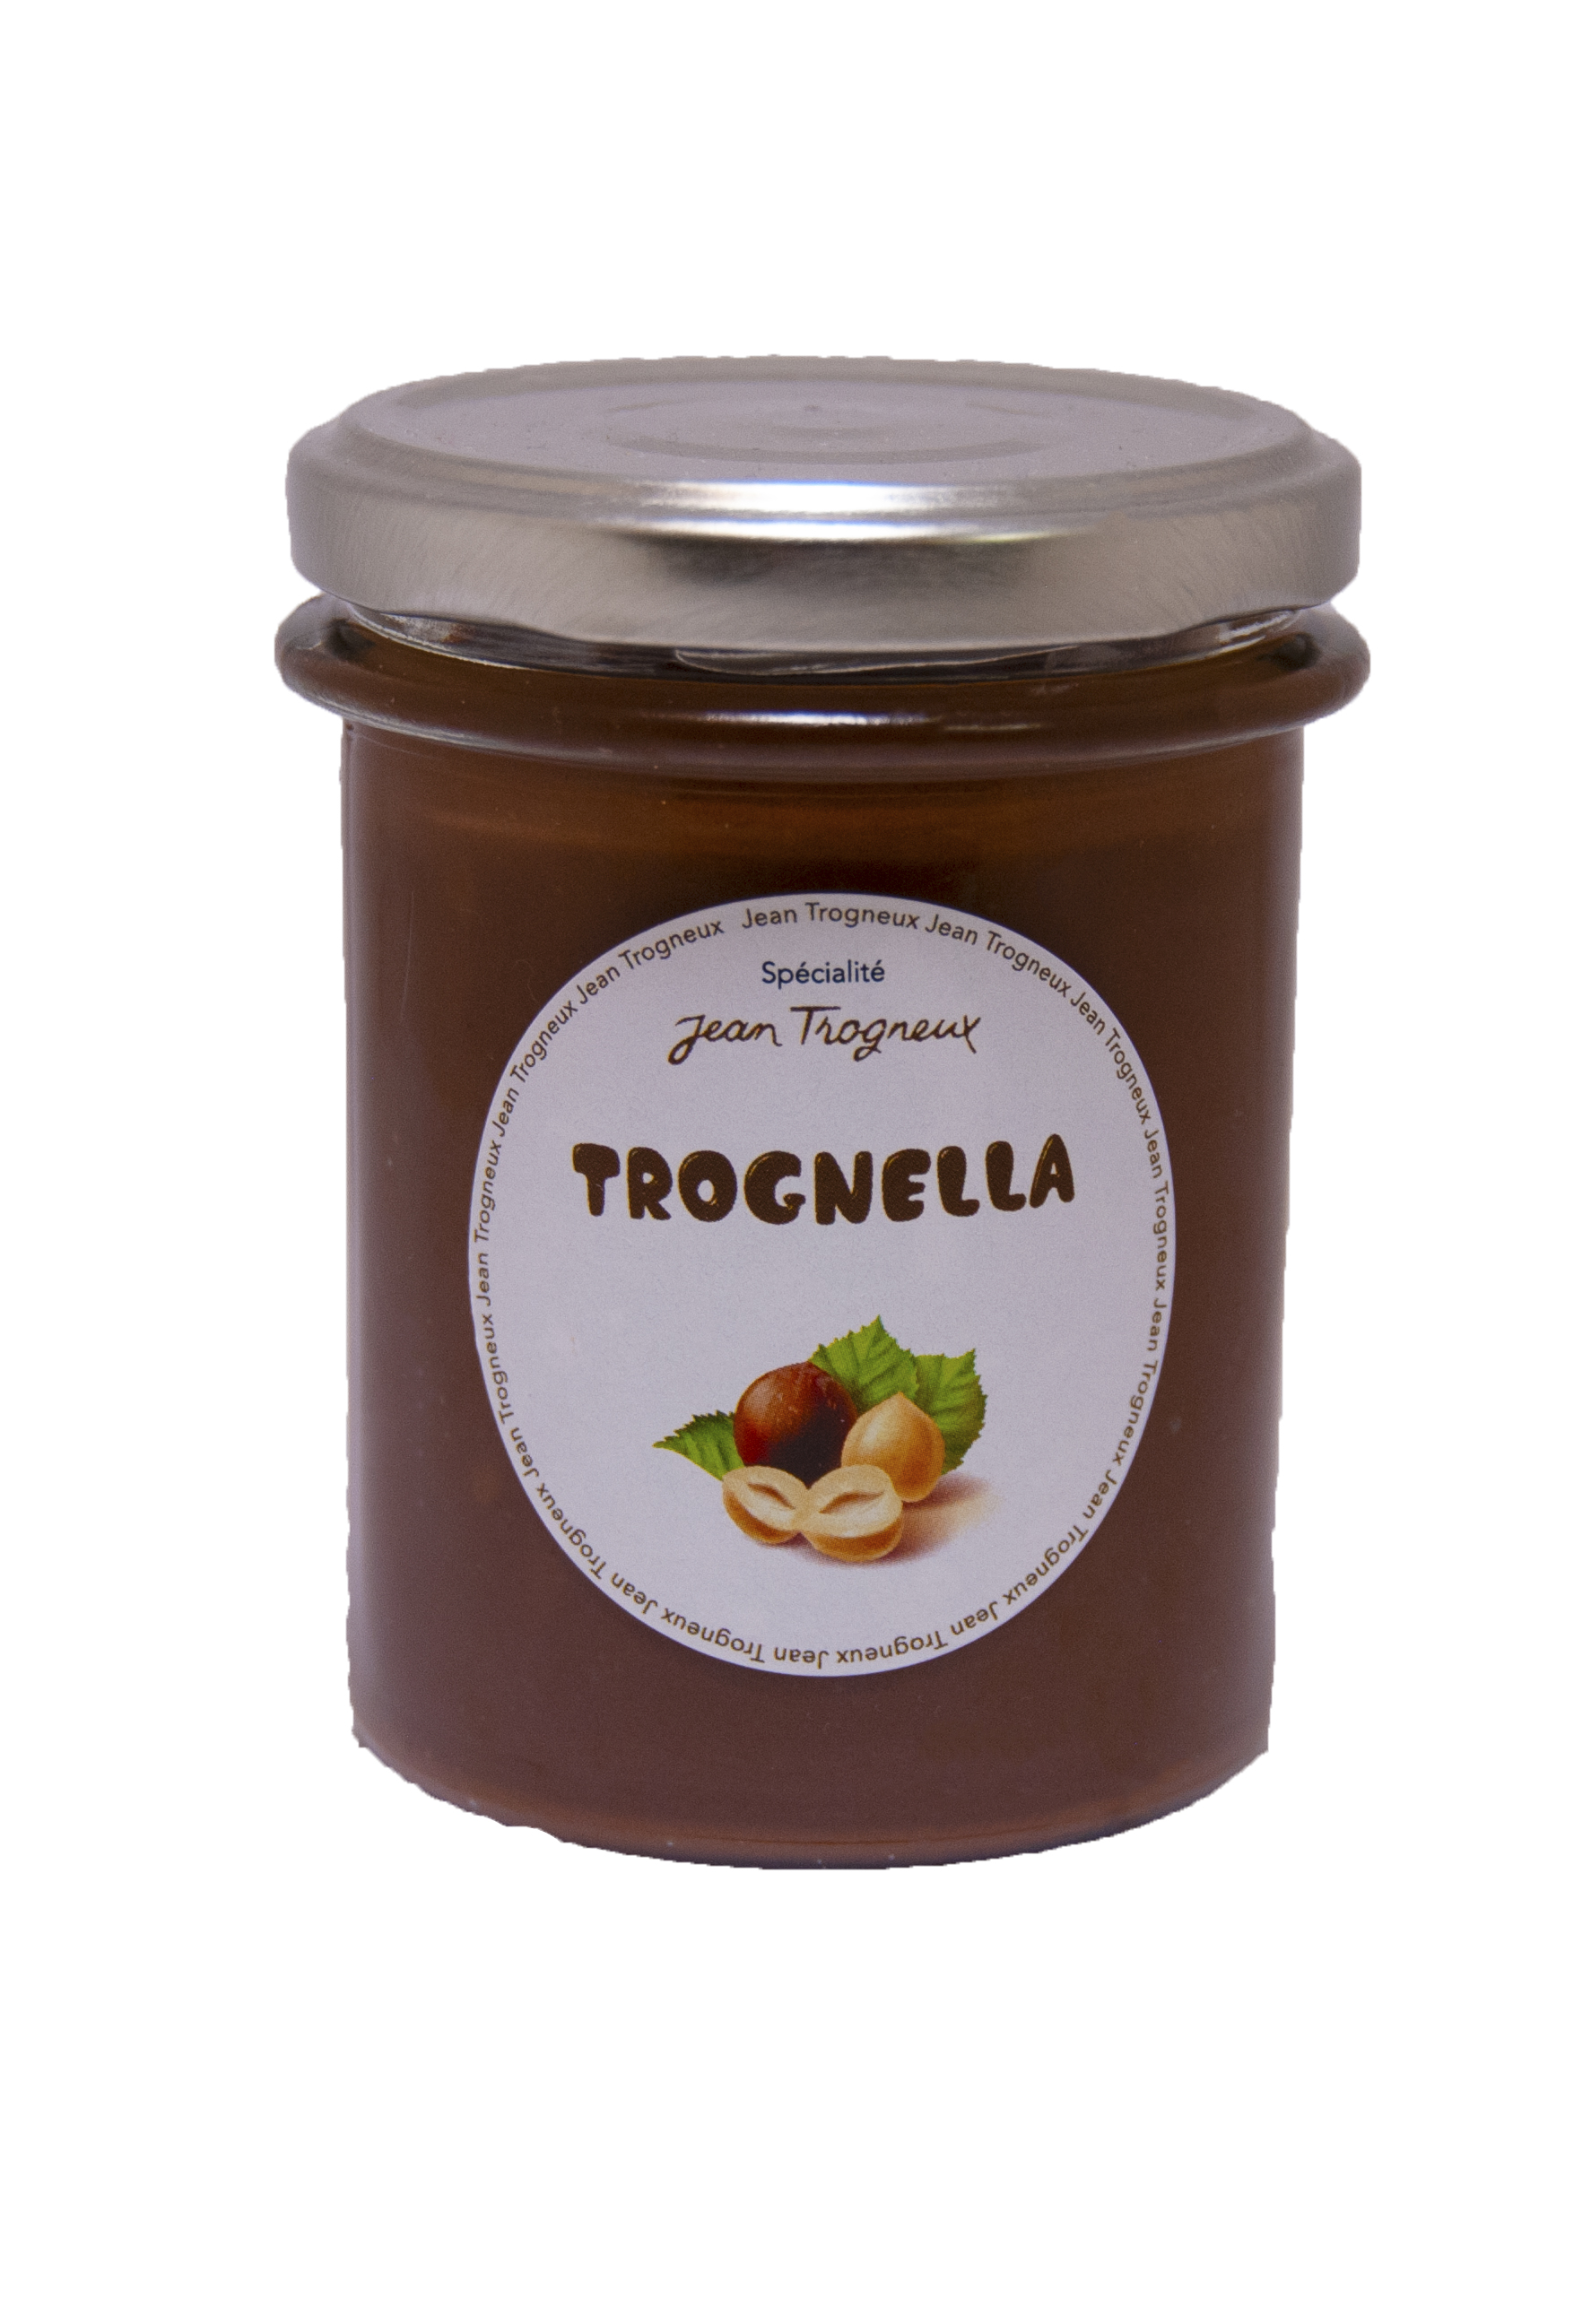 La "Trognella" Pâte de noisettes au chocolat